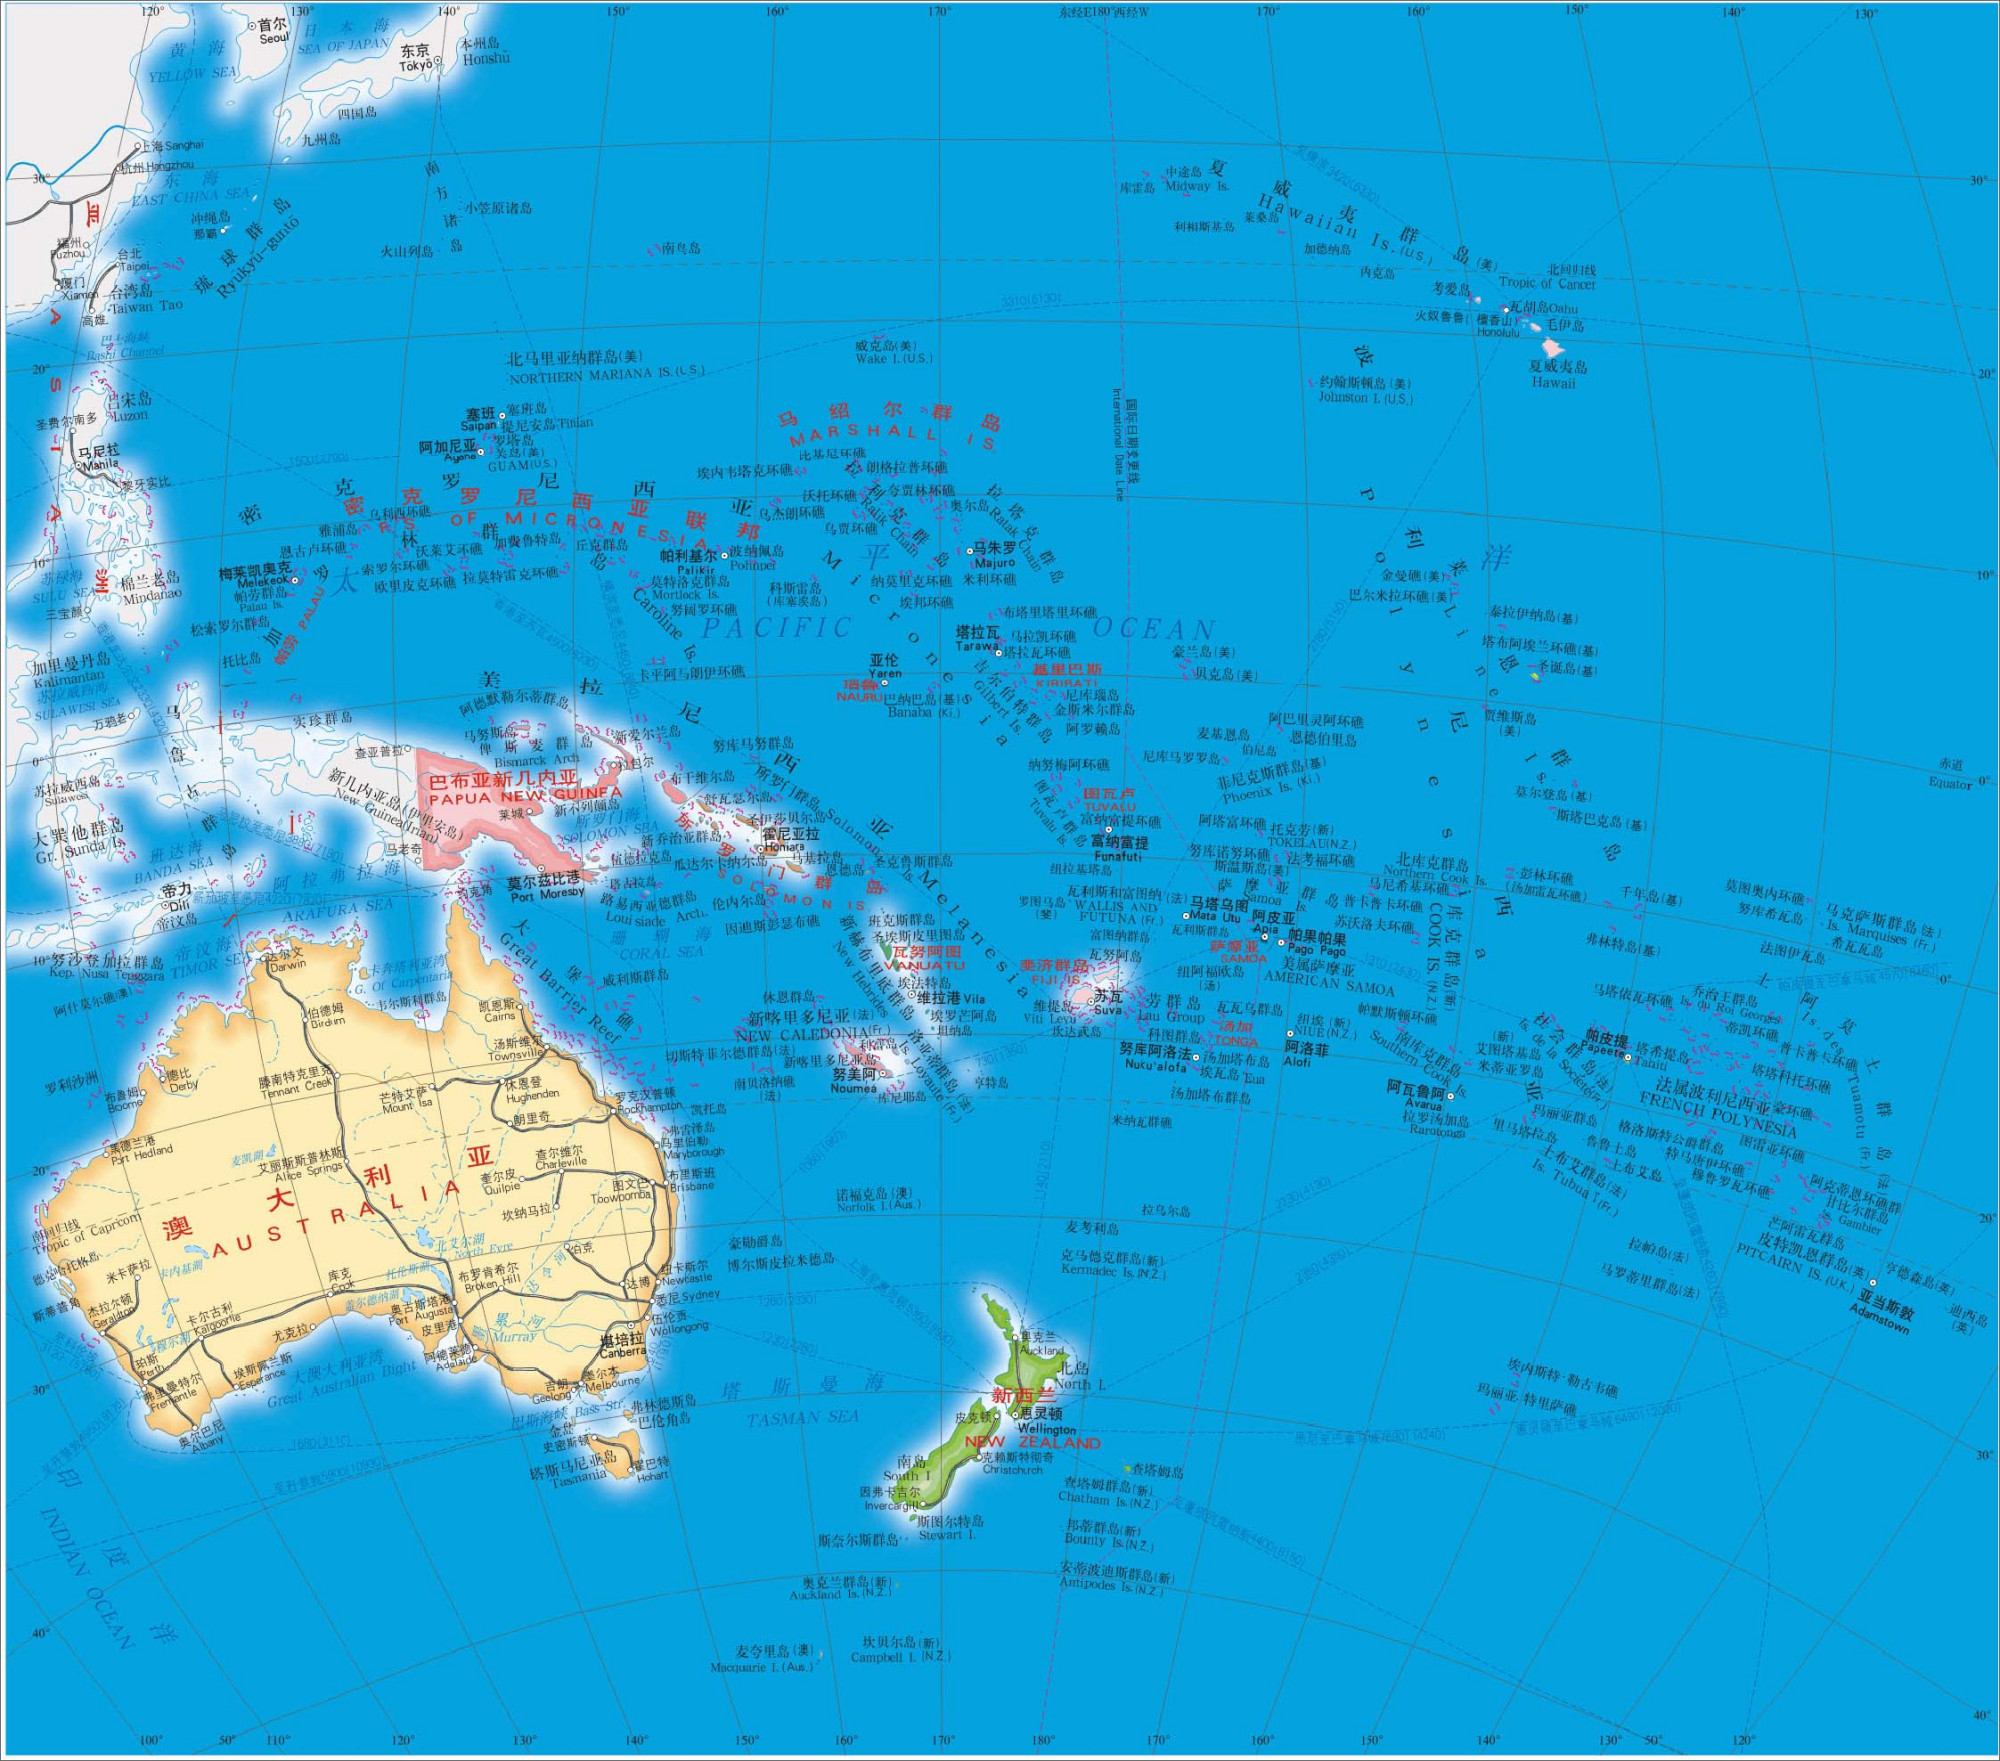 感觉新西兰就在澳大利亚旁边?事实是,它们真的离挺远